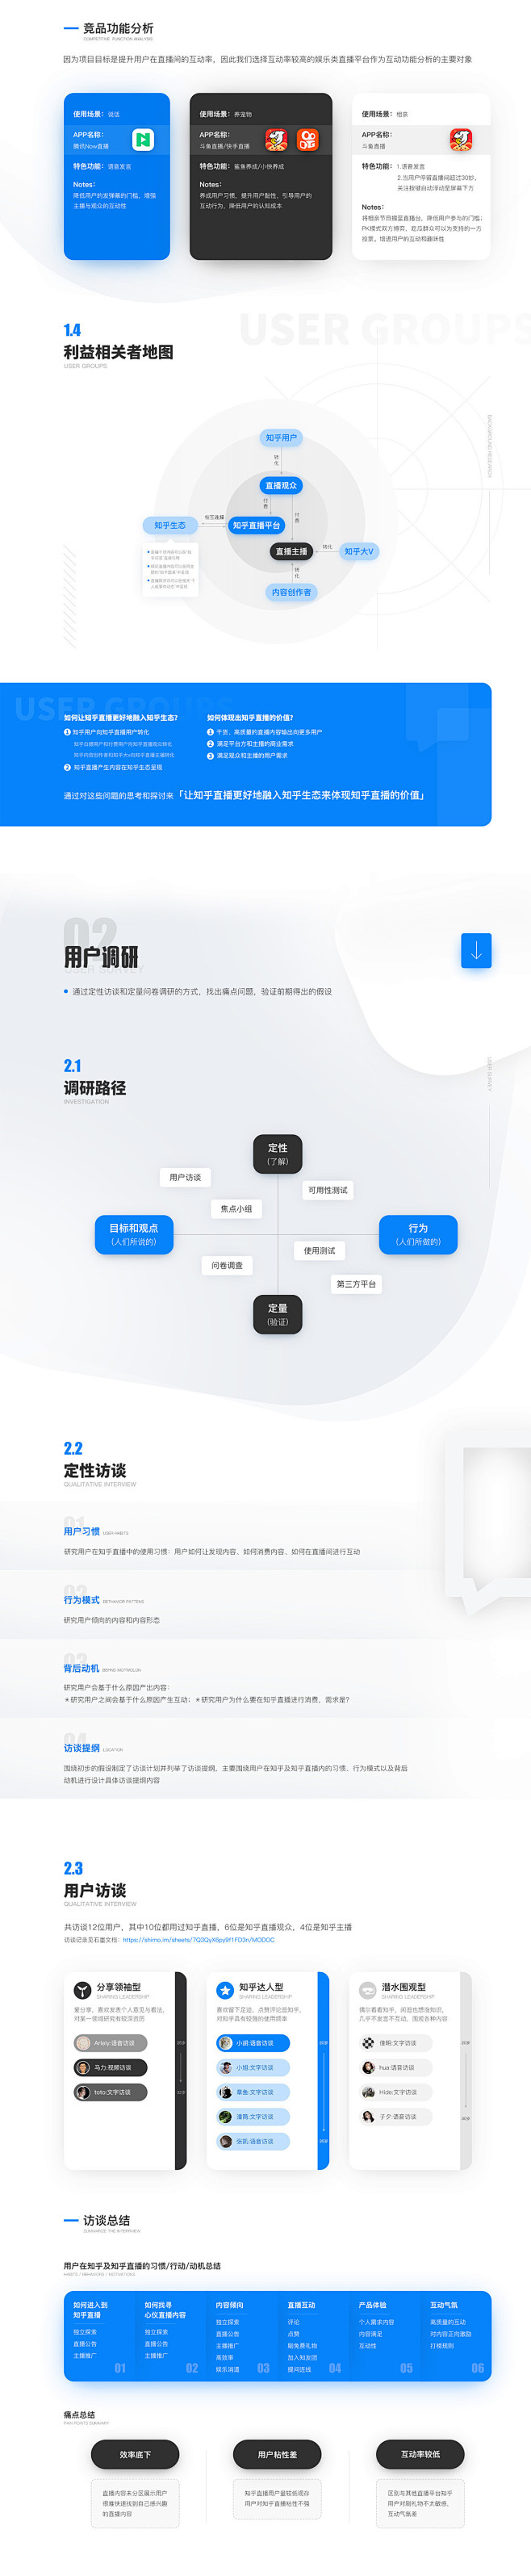 知乎直播互动设计提案-UI中国用户体验设...